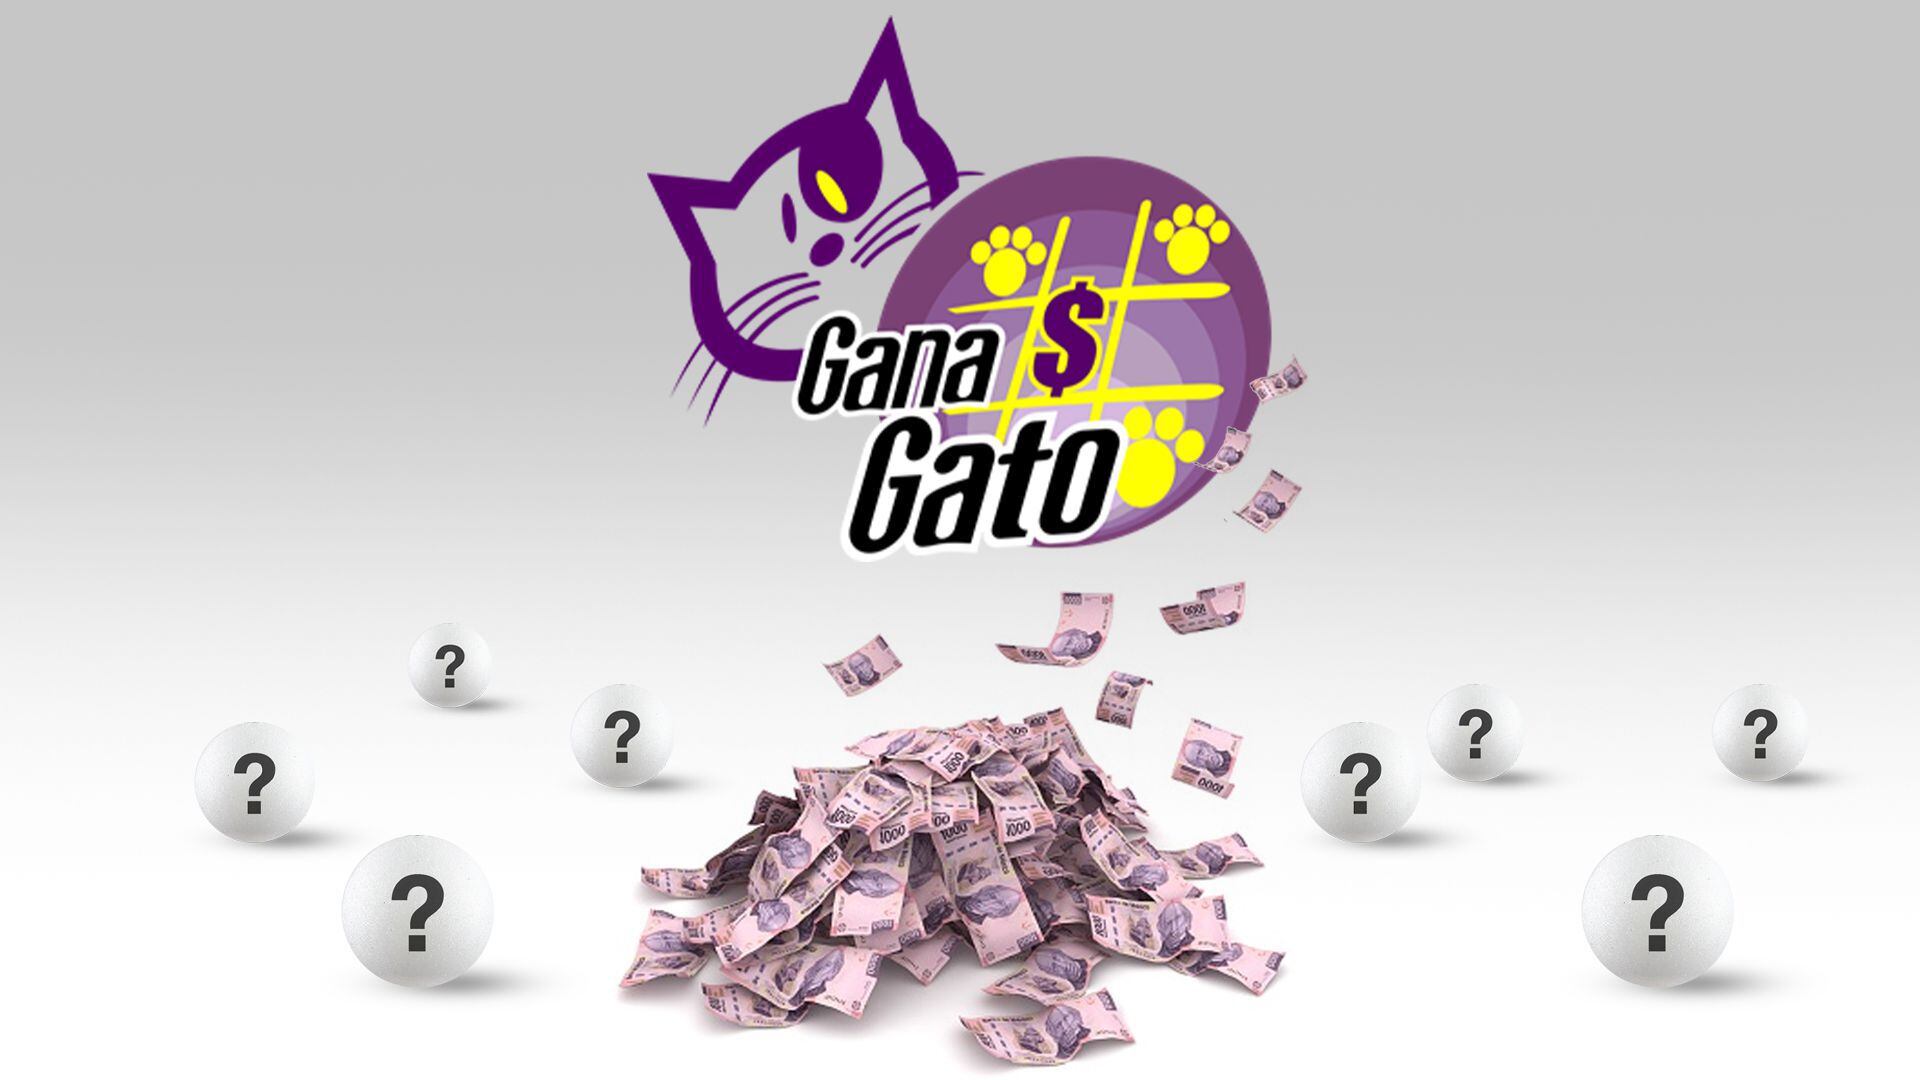 La Lotería Nacional realiza el sorteo de Gana Gato tres días por semana: cada martes, jueves y sábados (Infobae/Jovani Pérez)